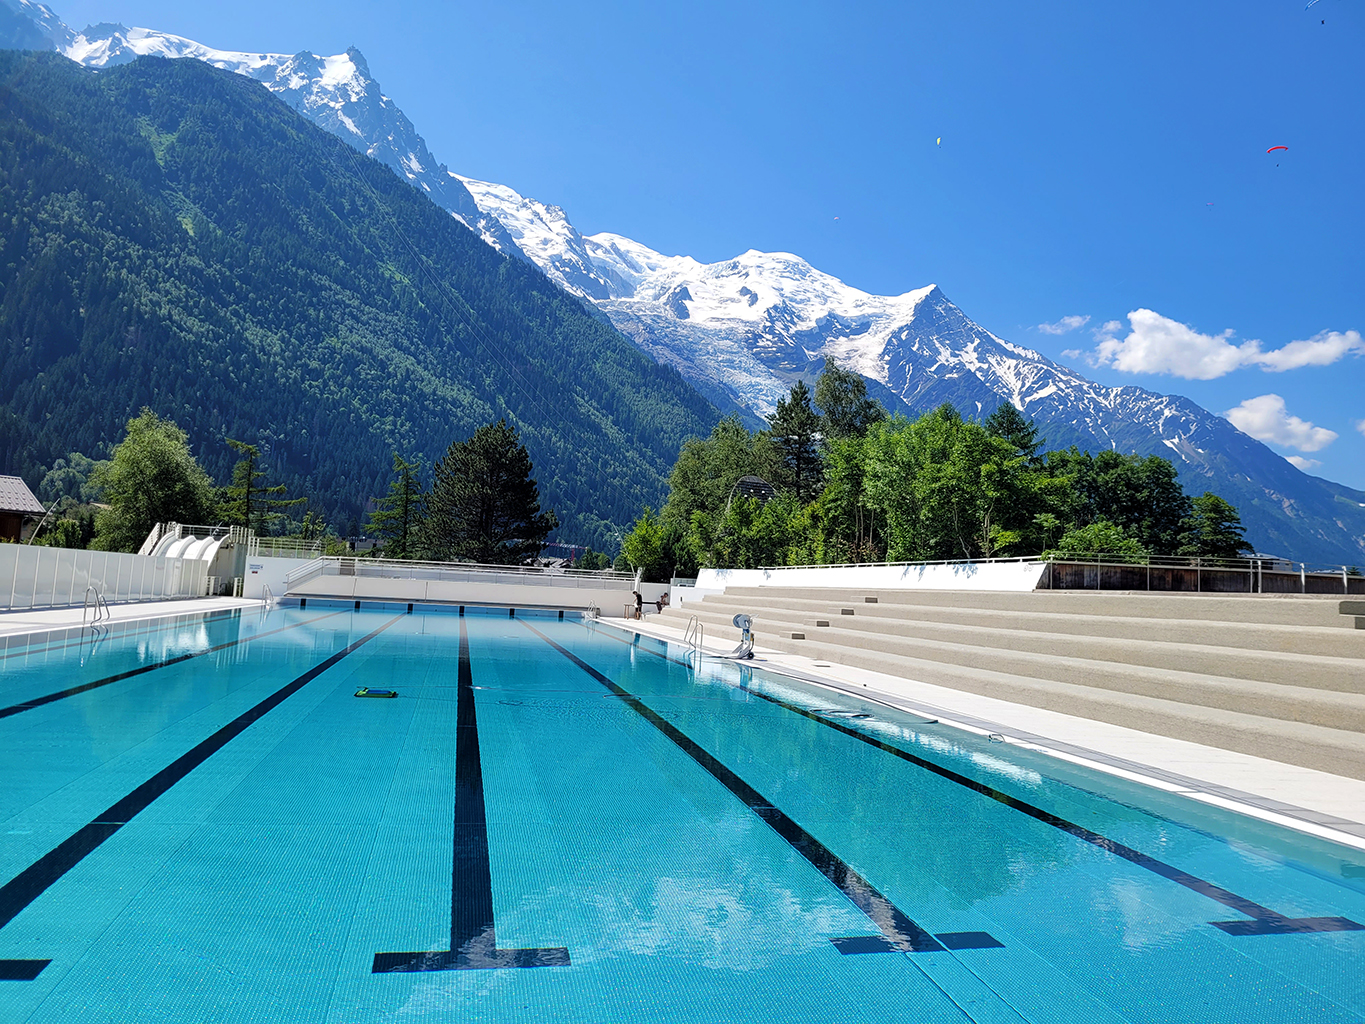 Inauguration du bassin extérieur de la piscine de Chamonix-Mont-Blan